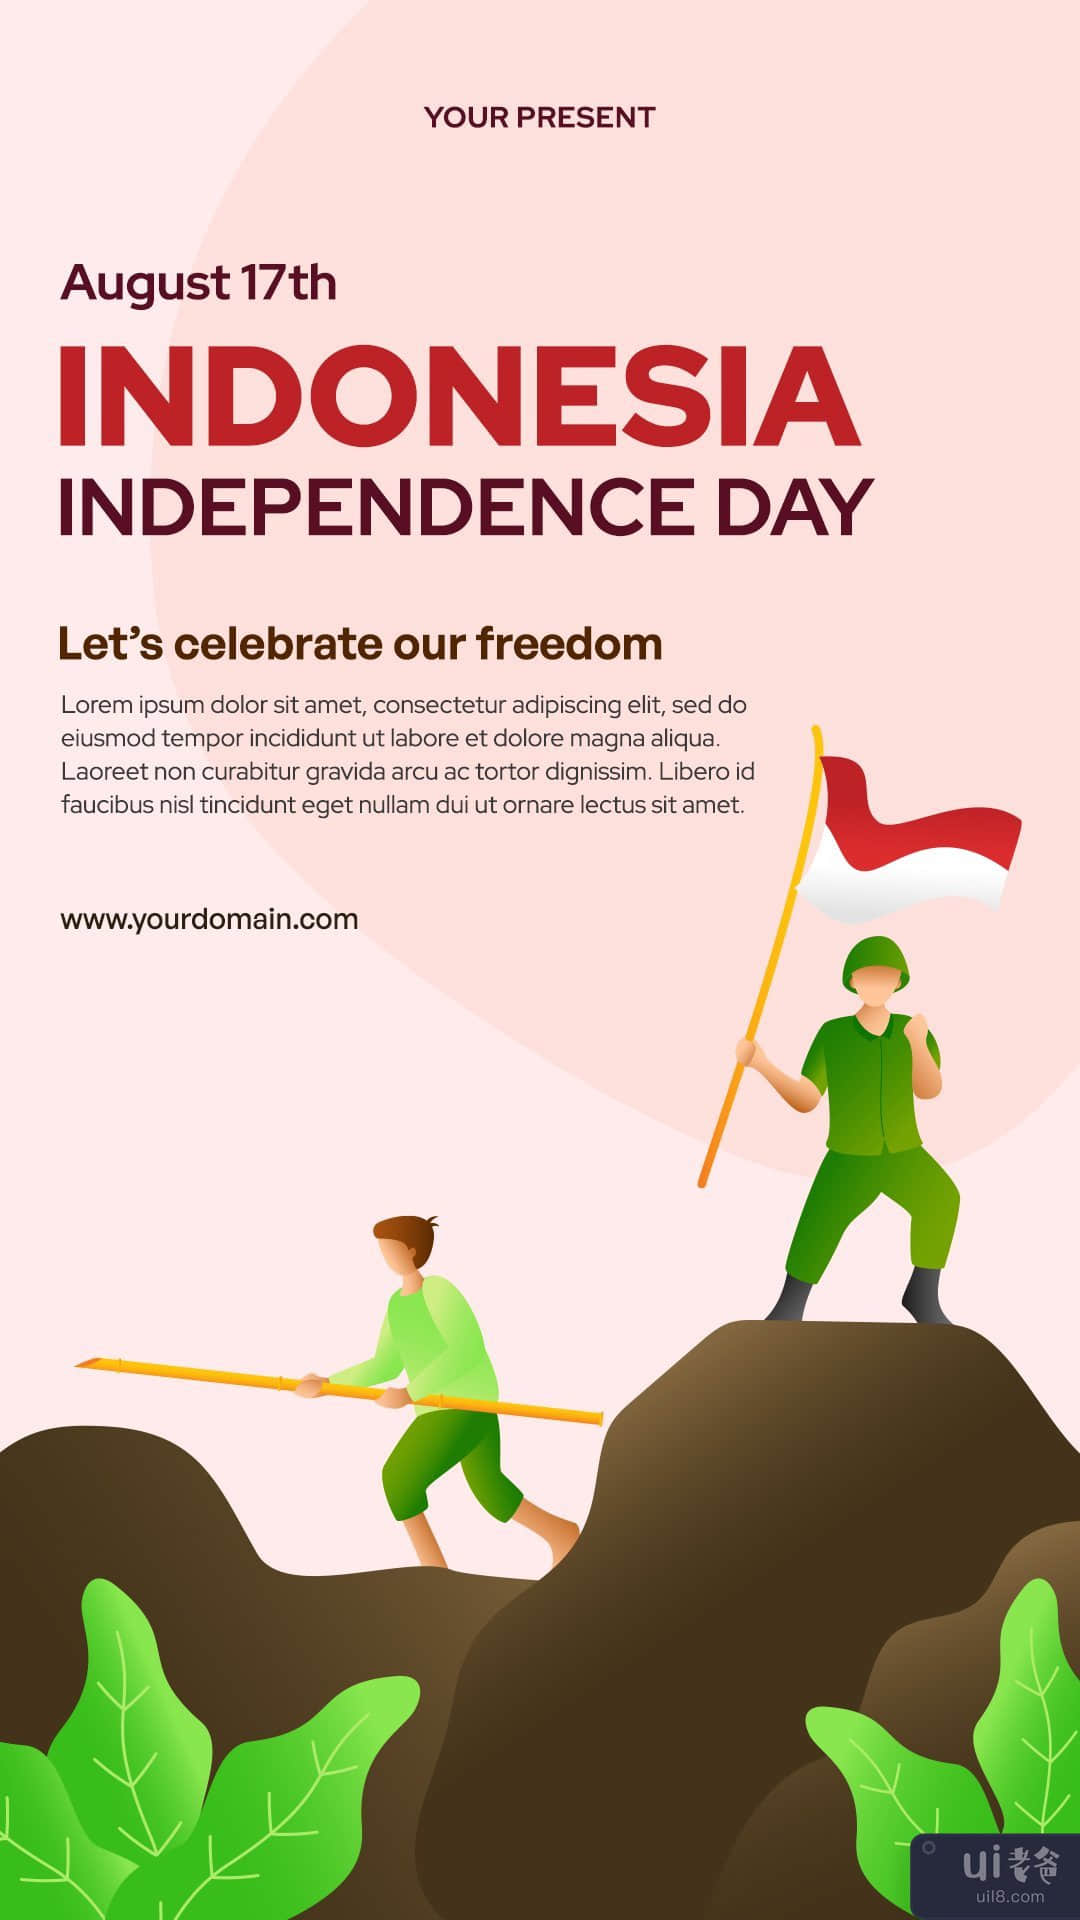 印度尼西亚独立日 Instagram 故事(Indonesian Independence Day Instagram Stories)插图7